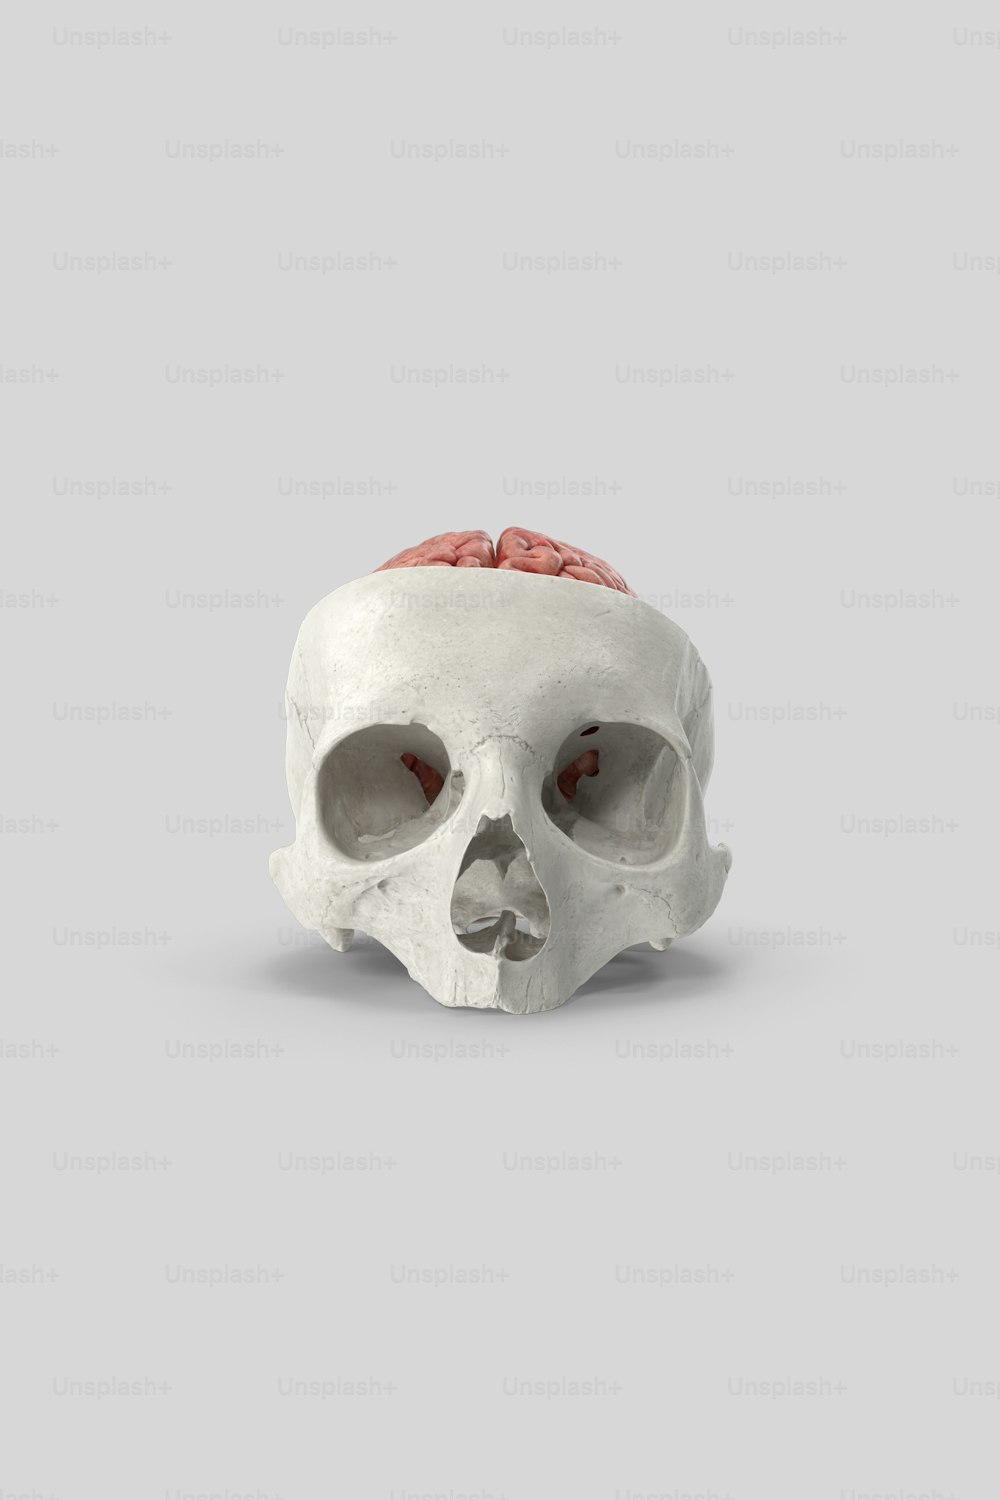 um crânio branco com um cérebro vermelho em cima dele